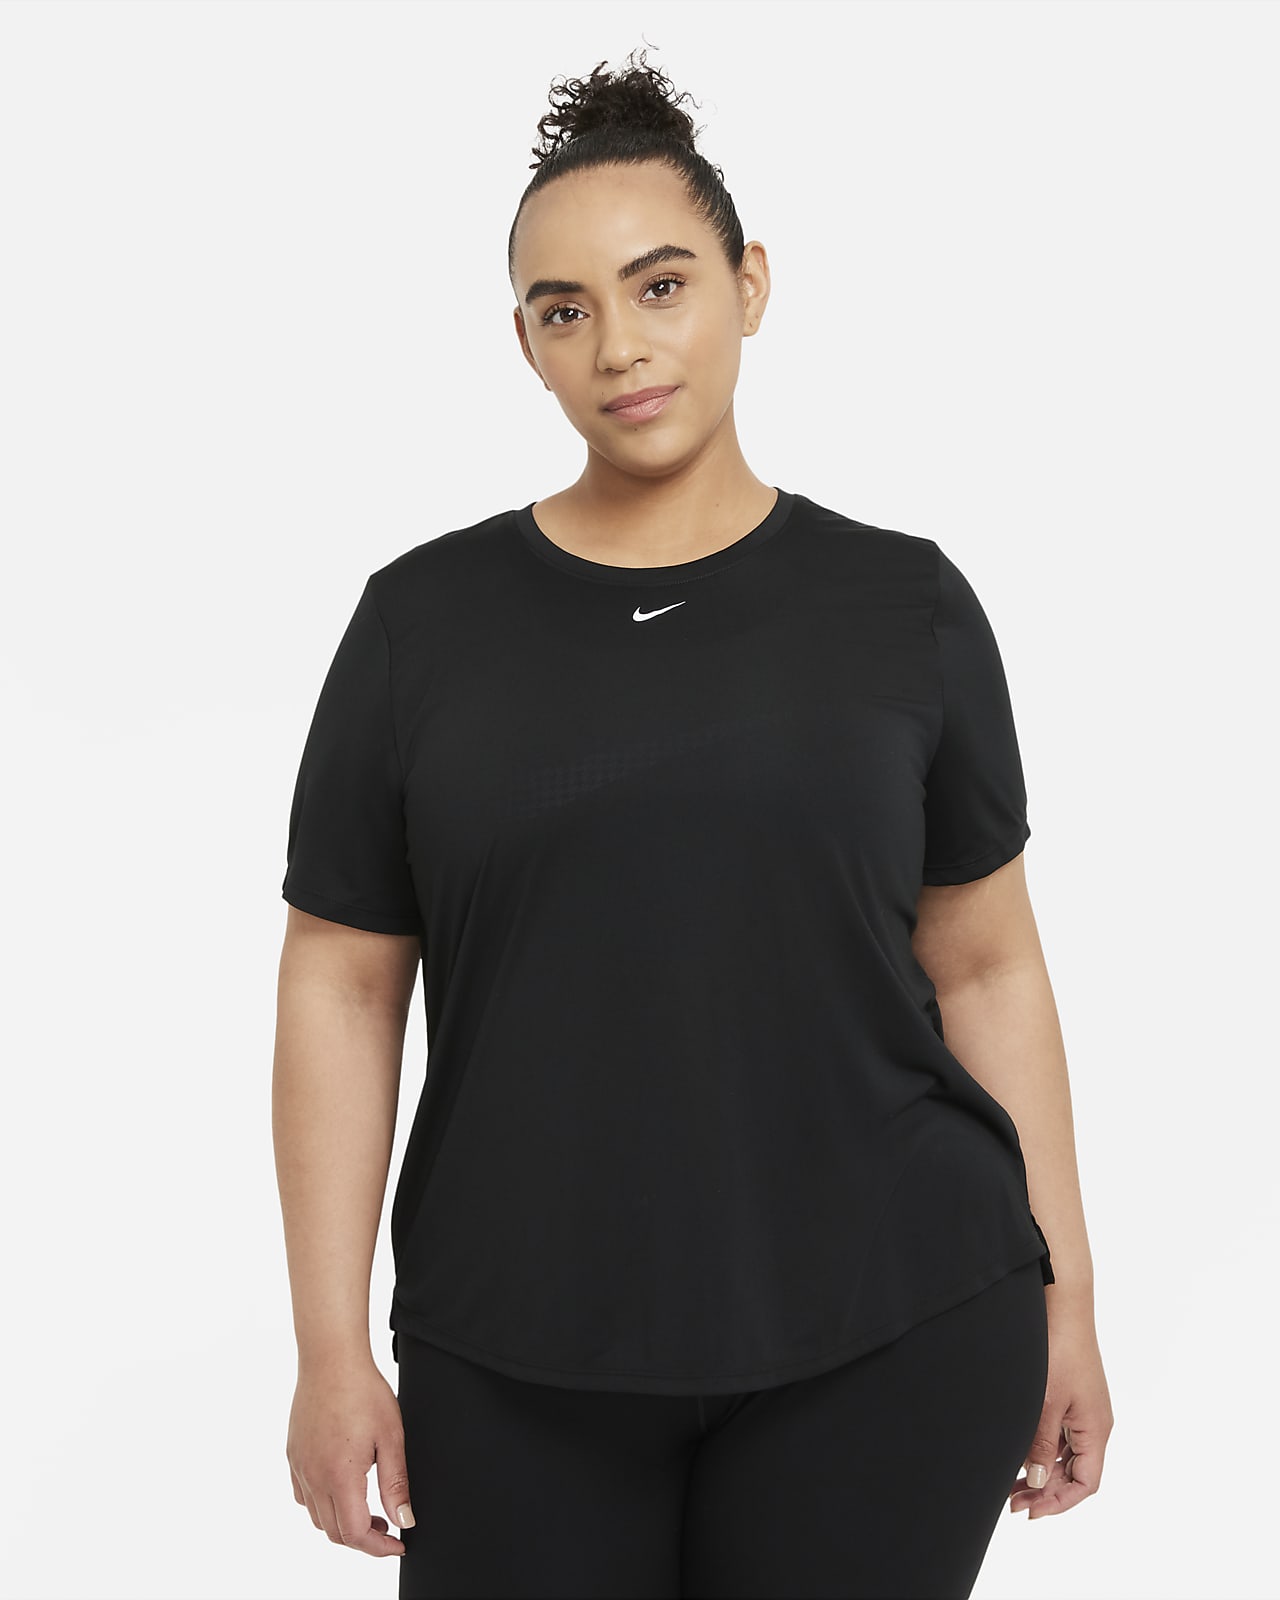 Dámské univerzální tričko s krátkým rukávem Nike Dri-FIT One (větší velikost)